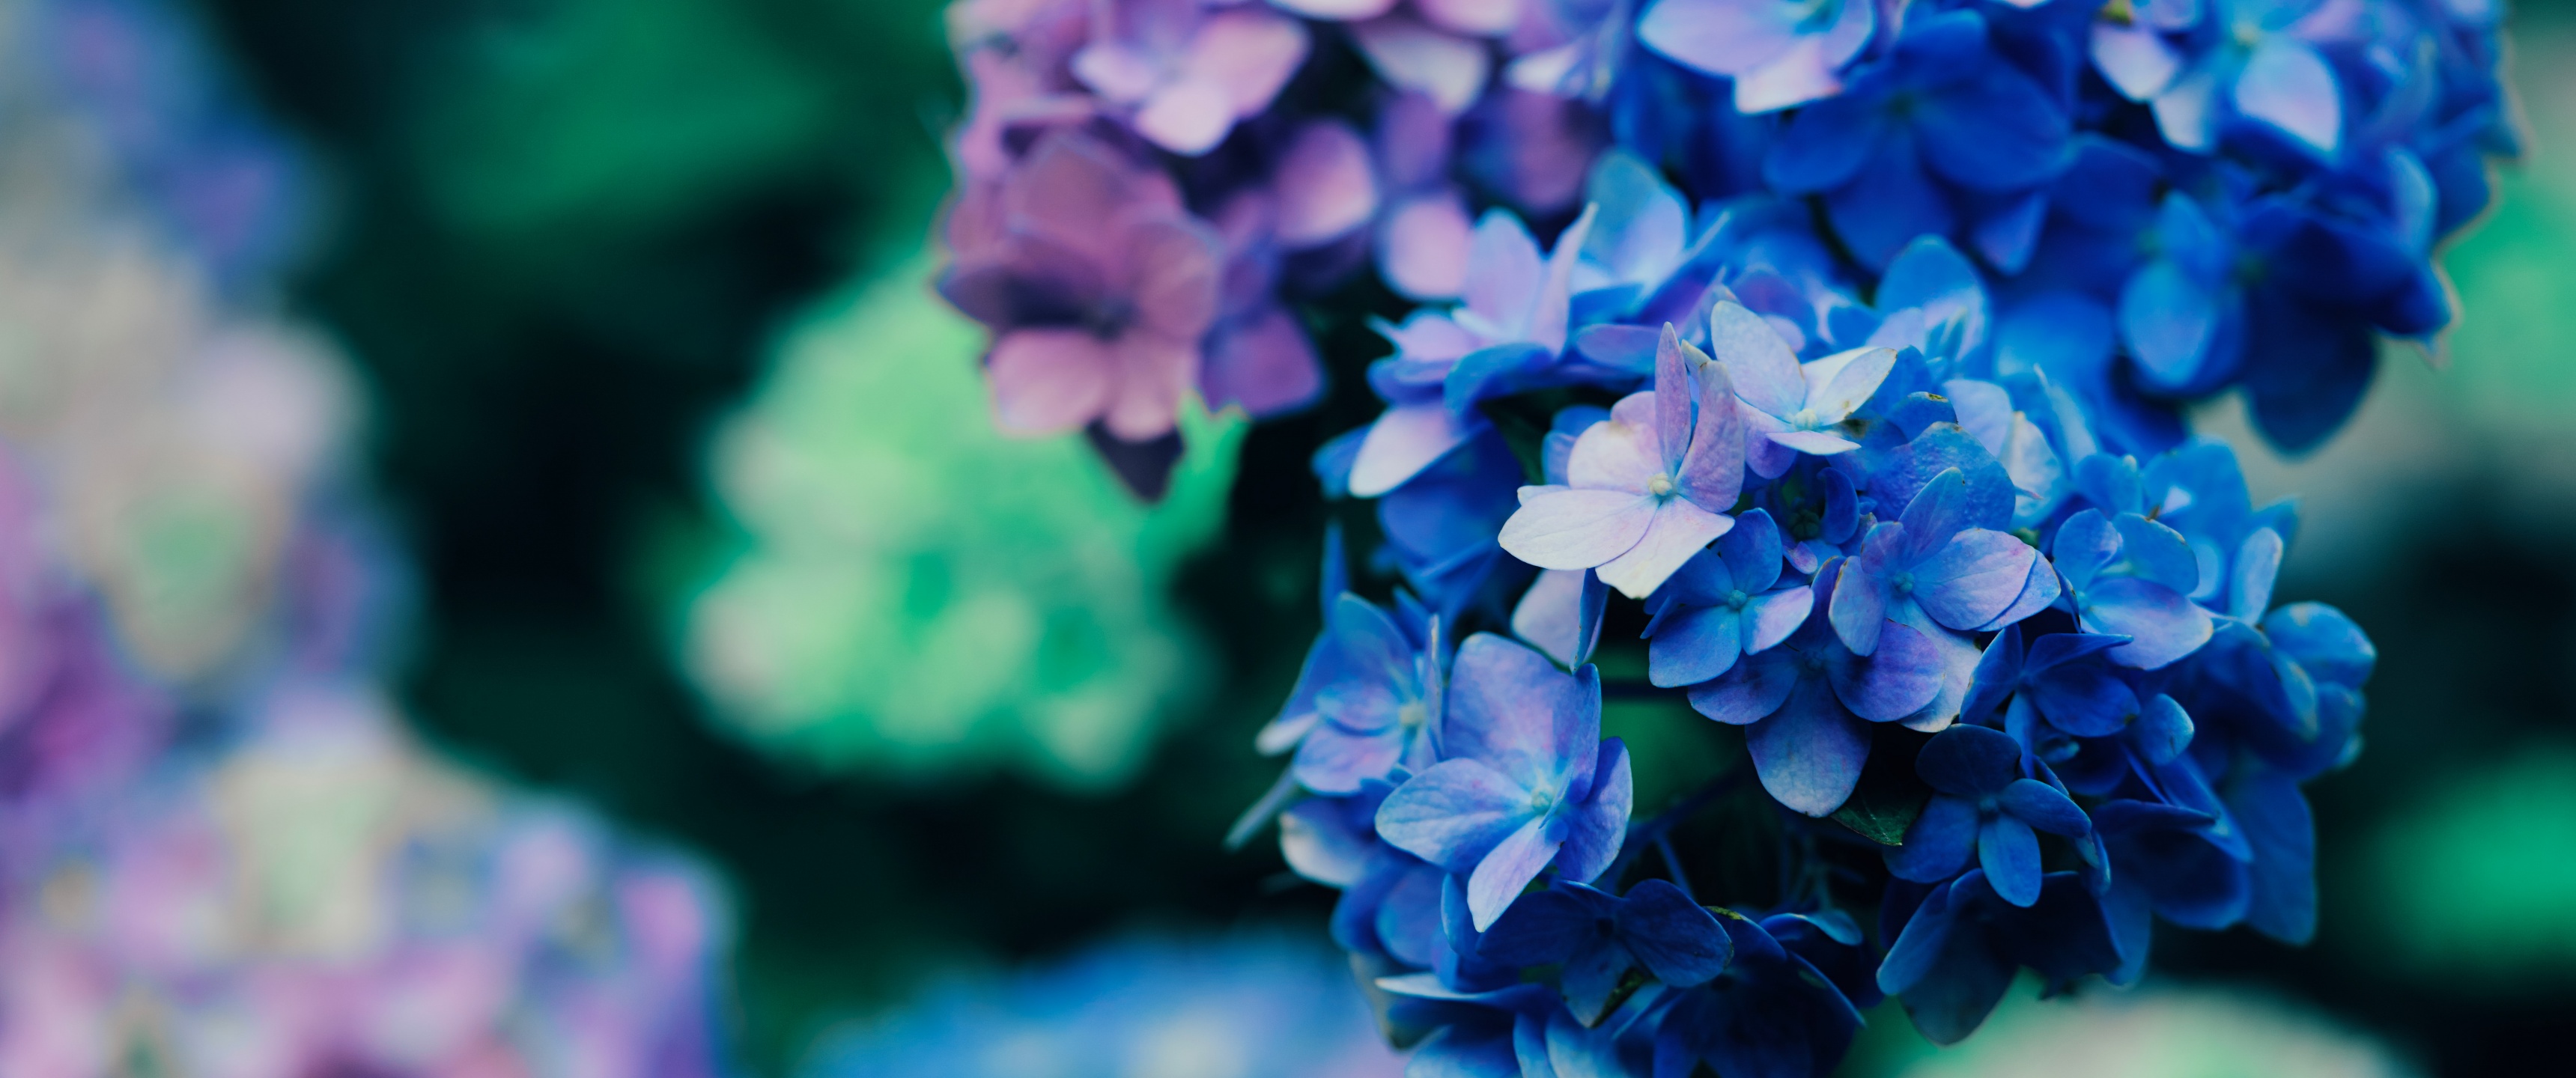 Nếu bạn yêu thích màu tím, bạn sẽ không thể cưỡng lại được bức ảnh hoa tím dịu dàng và lãng mạn này. Tận hưởng vẻ đẹp tự nhiên, bất ngờ và tươi mới của từng cánh hoa.